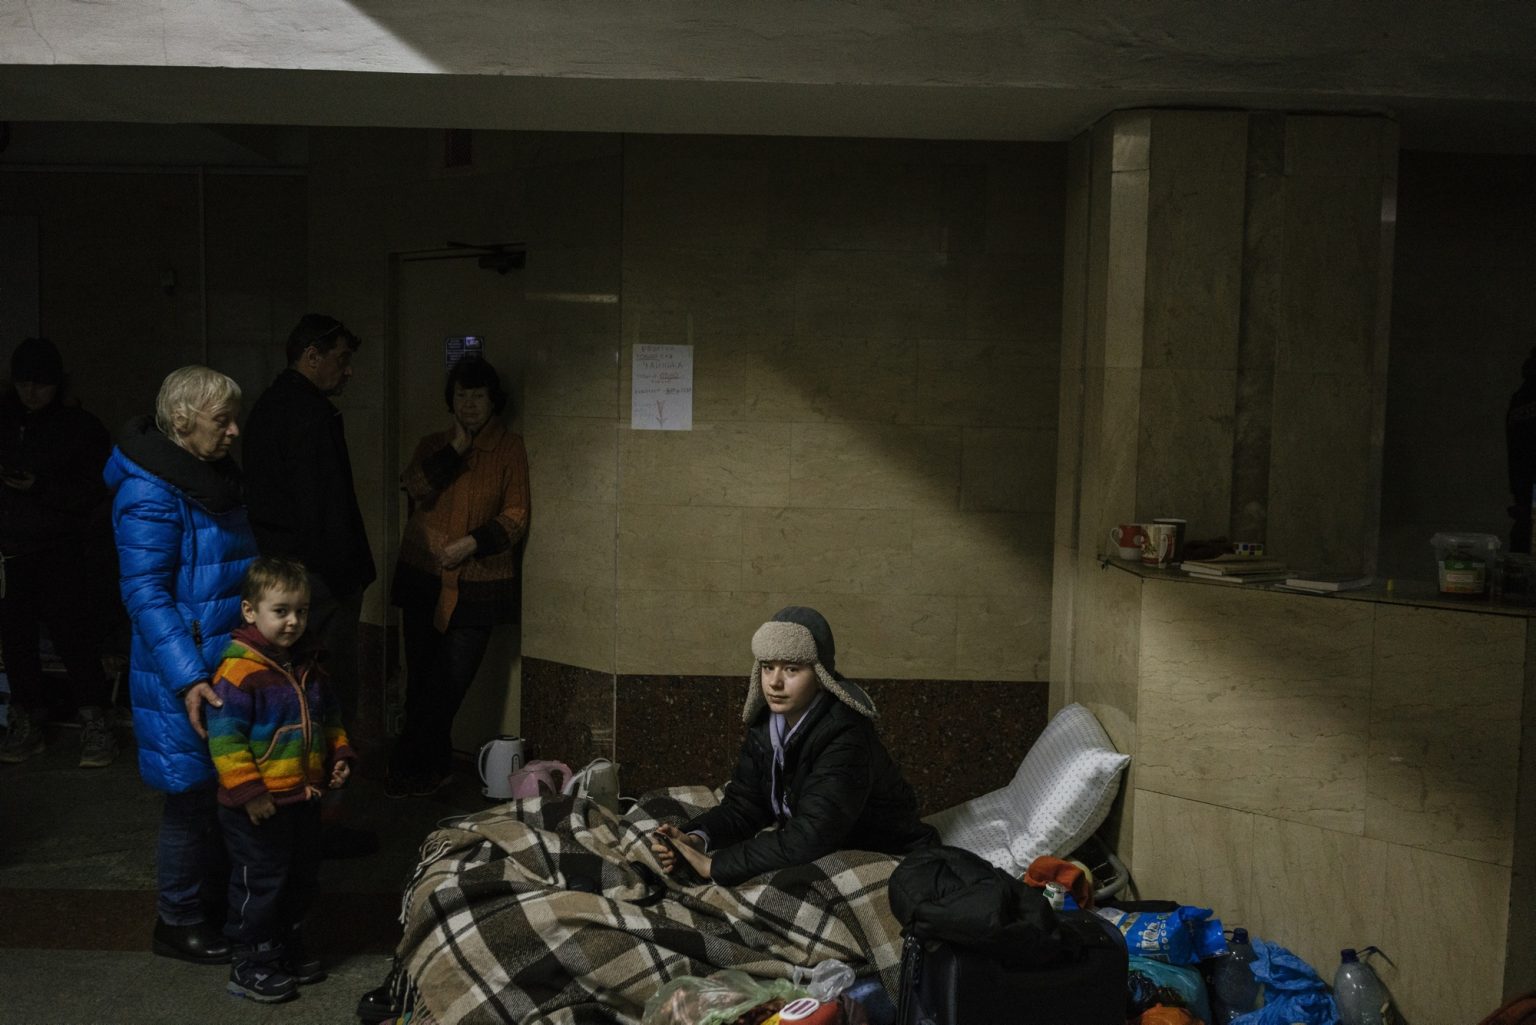 01559196 01558422 UKRAINE, Kharkiv. March 17, 2022 - People inside a metro station in Kharkiv used as a bomb shelter.                  As Russia invades Ukraine, thousands of Ukrainians are fleeing the country to find shelter in bordering countries. 
---------
Con l'invasione russa ai danni dell'Ucraina, migliaia di ucraini sono in fuga dalla nazione d'origine per cercare rifugio nelle nazioni confinanti.*** SPECIAL   FEE   APPLIES ****** SPECIAL   FEE   APPLIES *** *** Local Caption *** 01559196